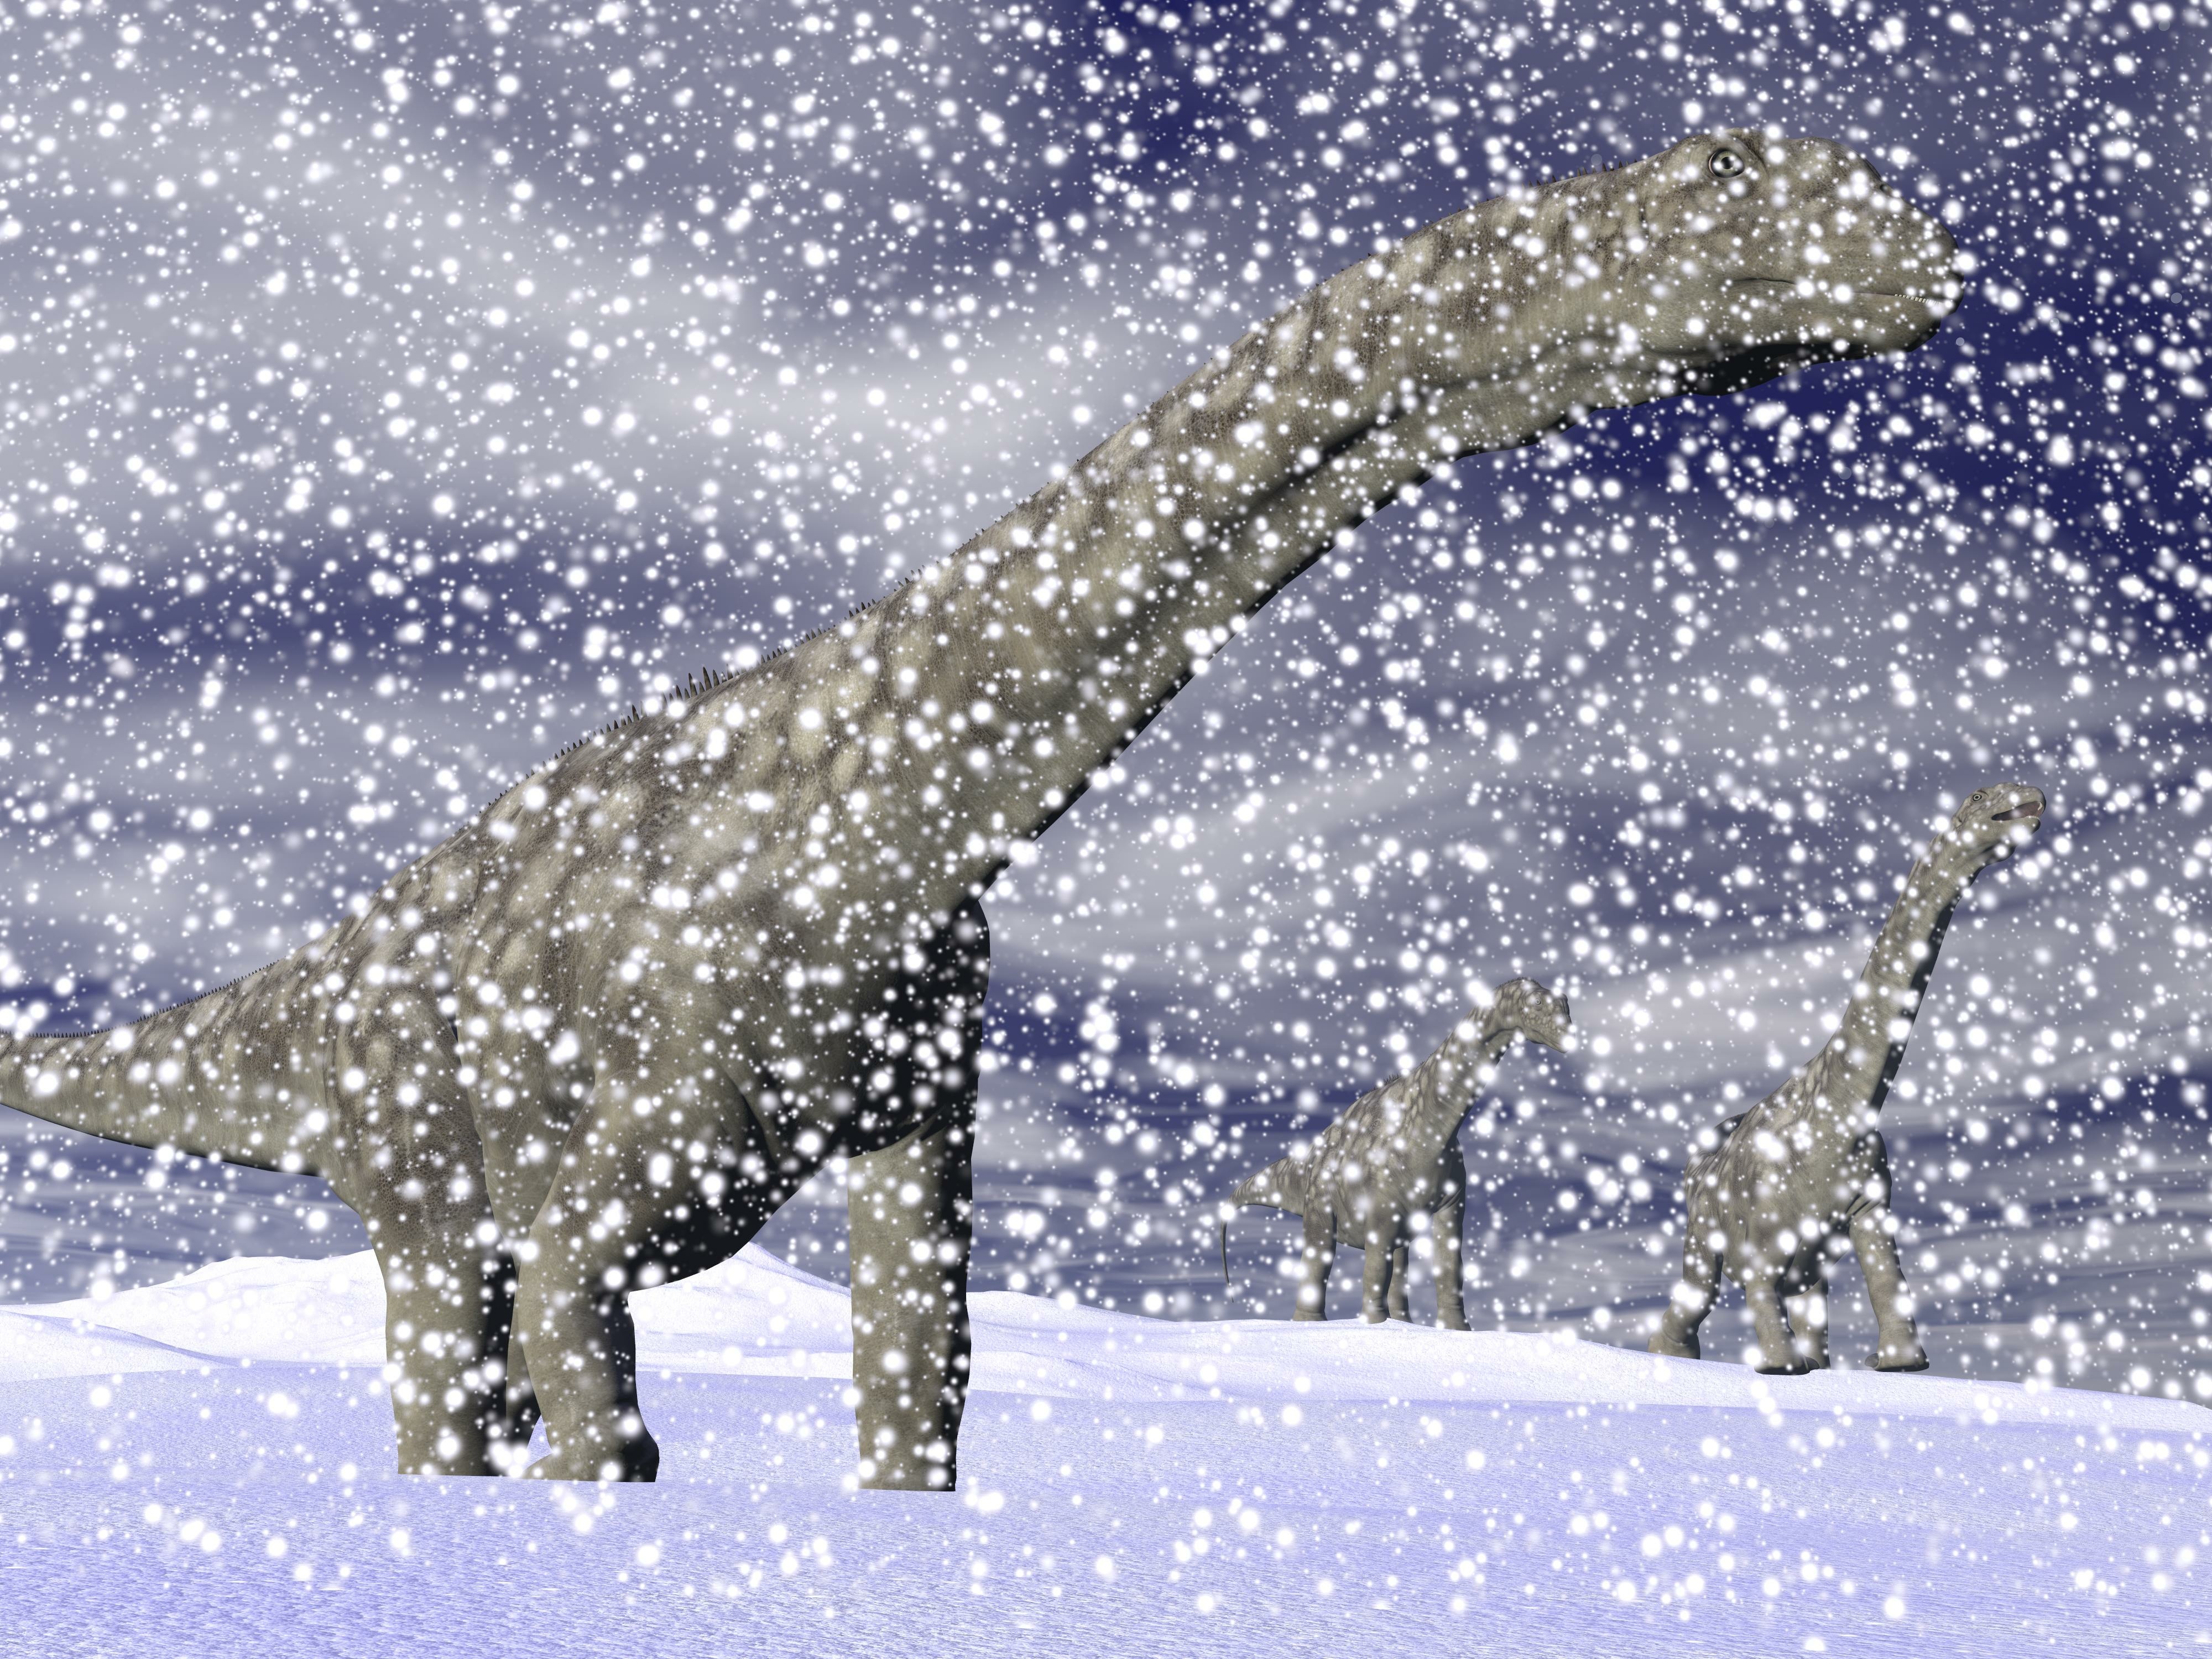 Les dinosaures ont survécu à l'extinction du Trias-Jurassique grâce à leur adaptation au froid. © Elenarts, Adobe Stock